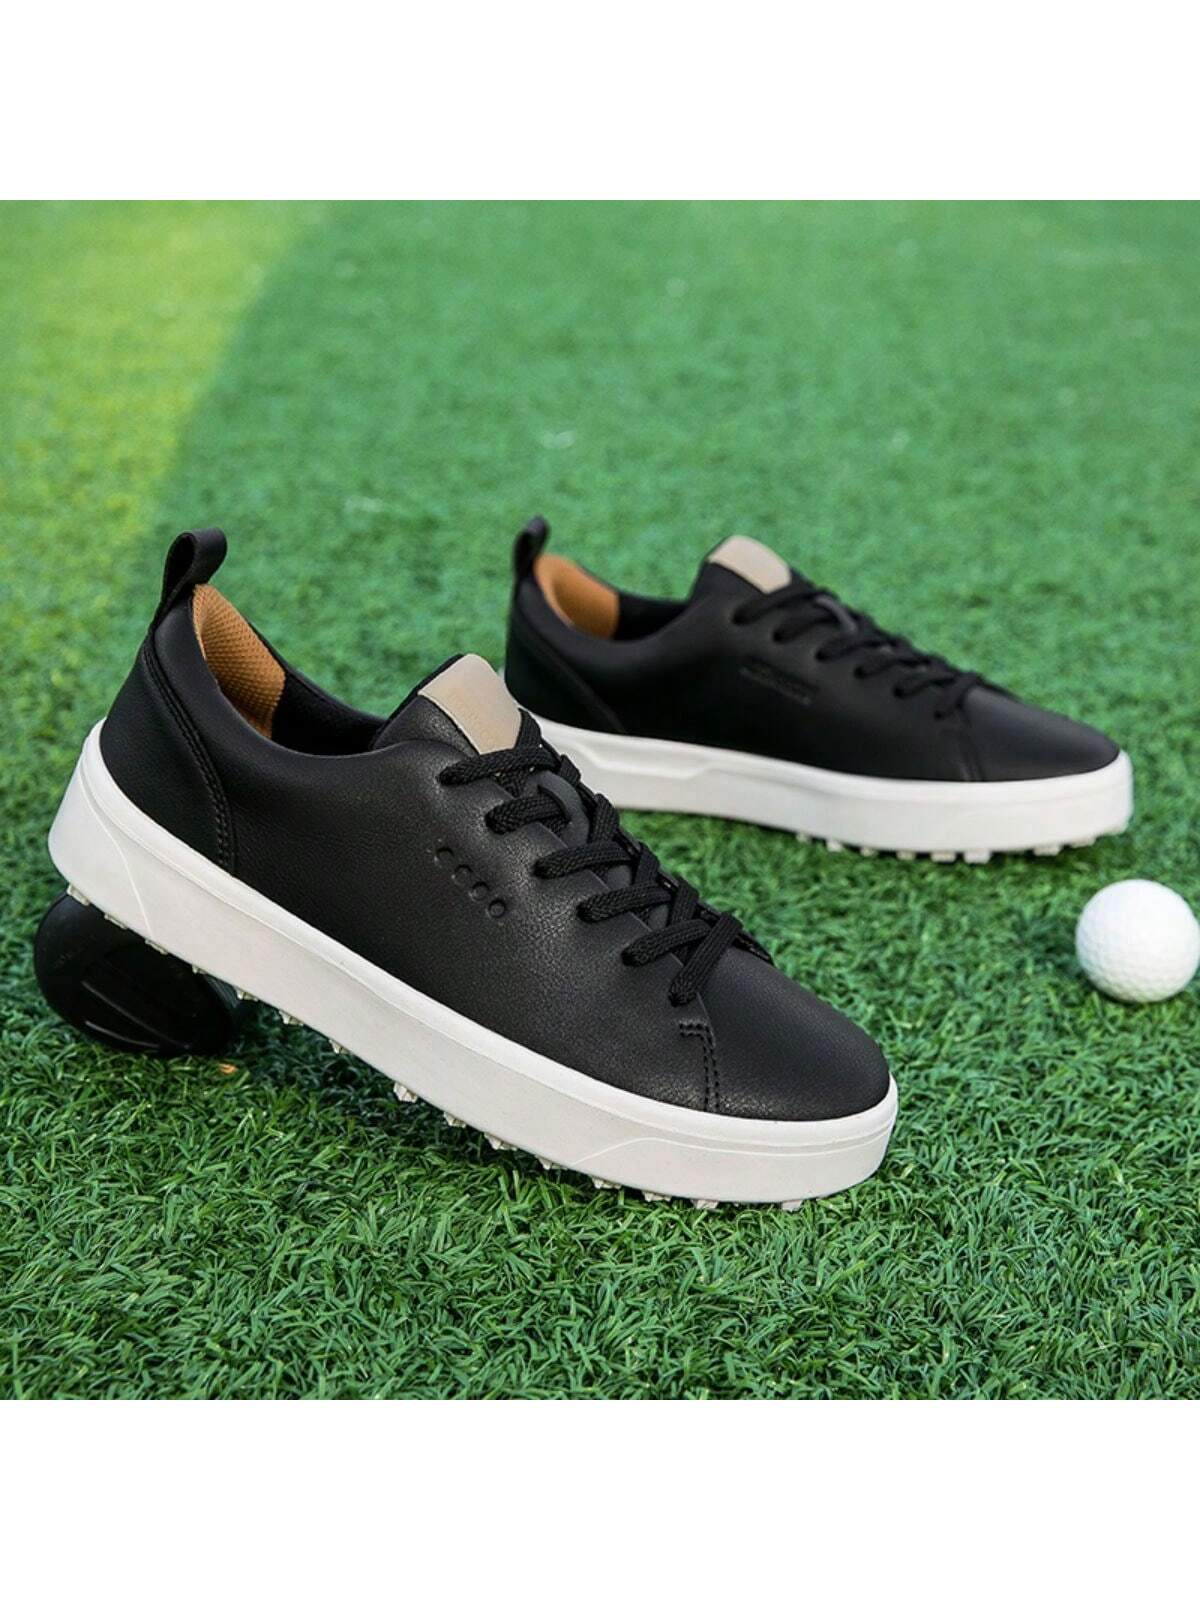 Мужские туфли для гольфа на открытом воздухе с профессиональной противоскользящей подошвой, черный